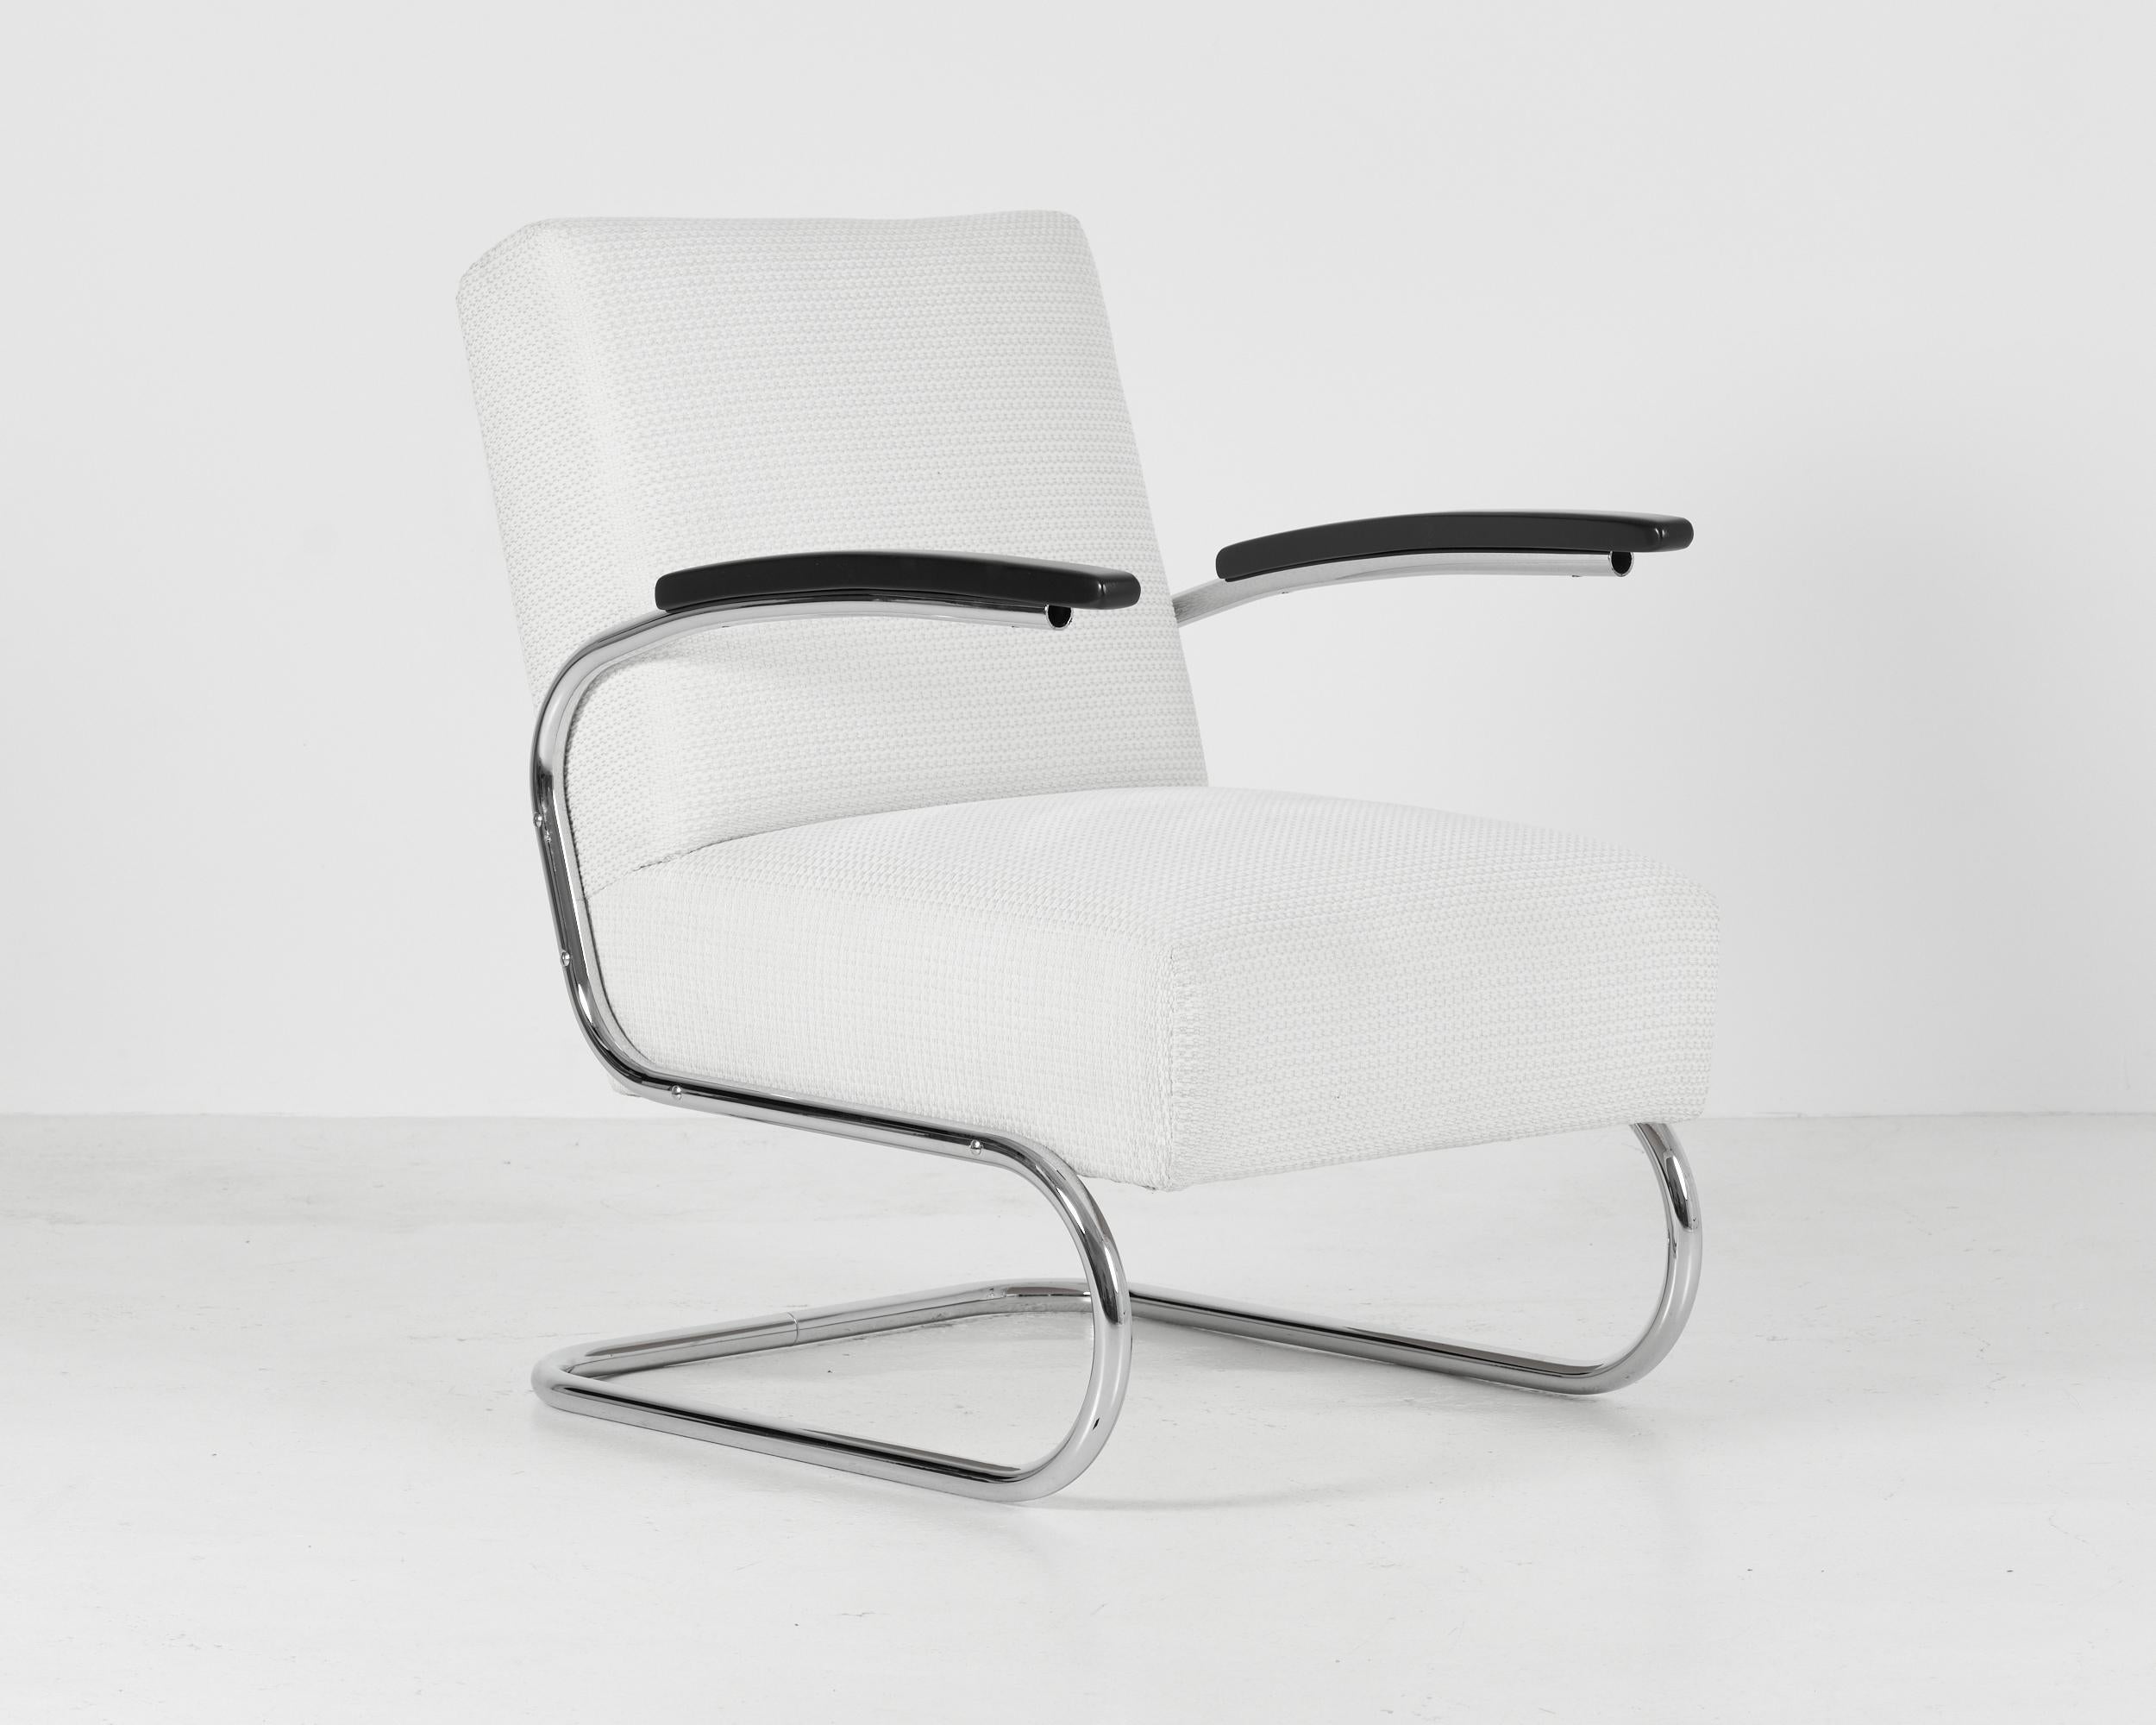 Un ensemble de deux fauteuils luge élégants et exceptionnellement confortables fabriqués par Mücke & Melder sous licence Thonet. 
La structure tubulaire chromée, ainsi que les accoudoirs incurvés en hêtre massif, ont été professionnellement nettoyés